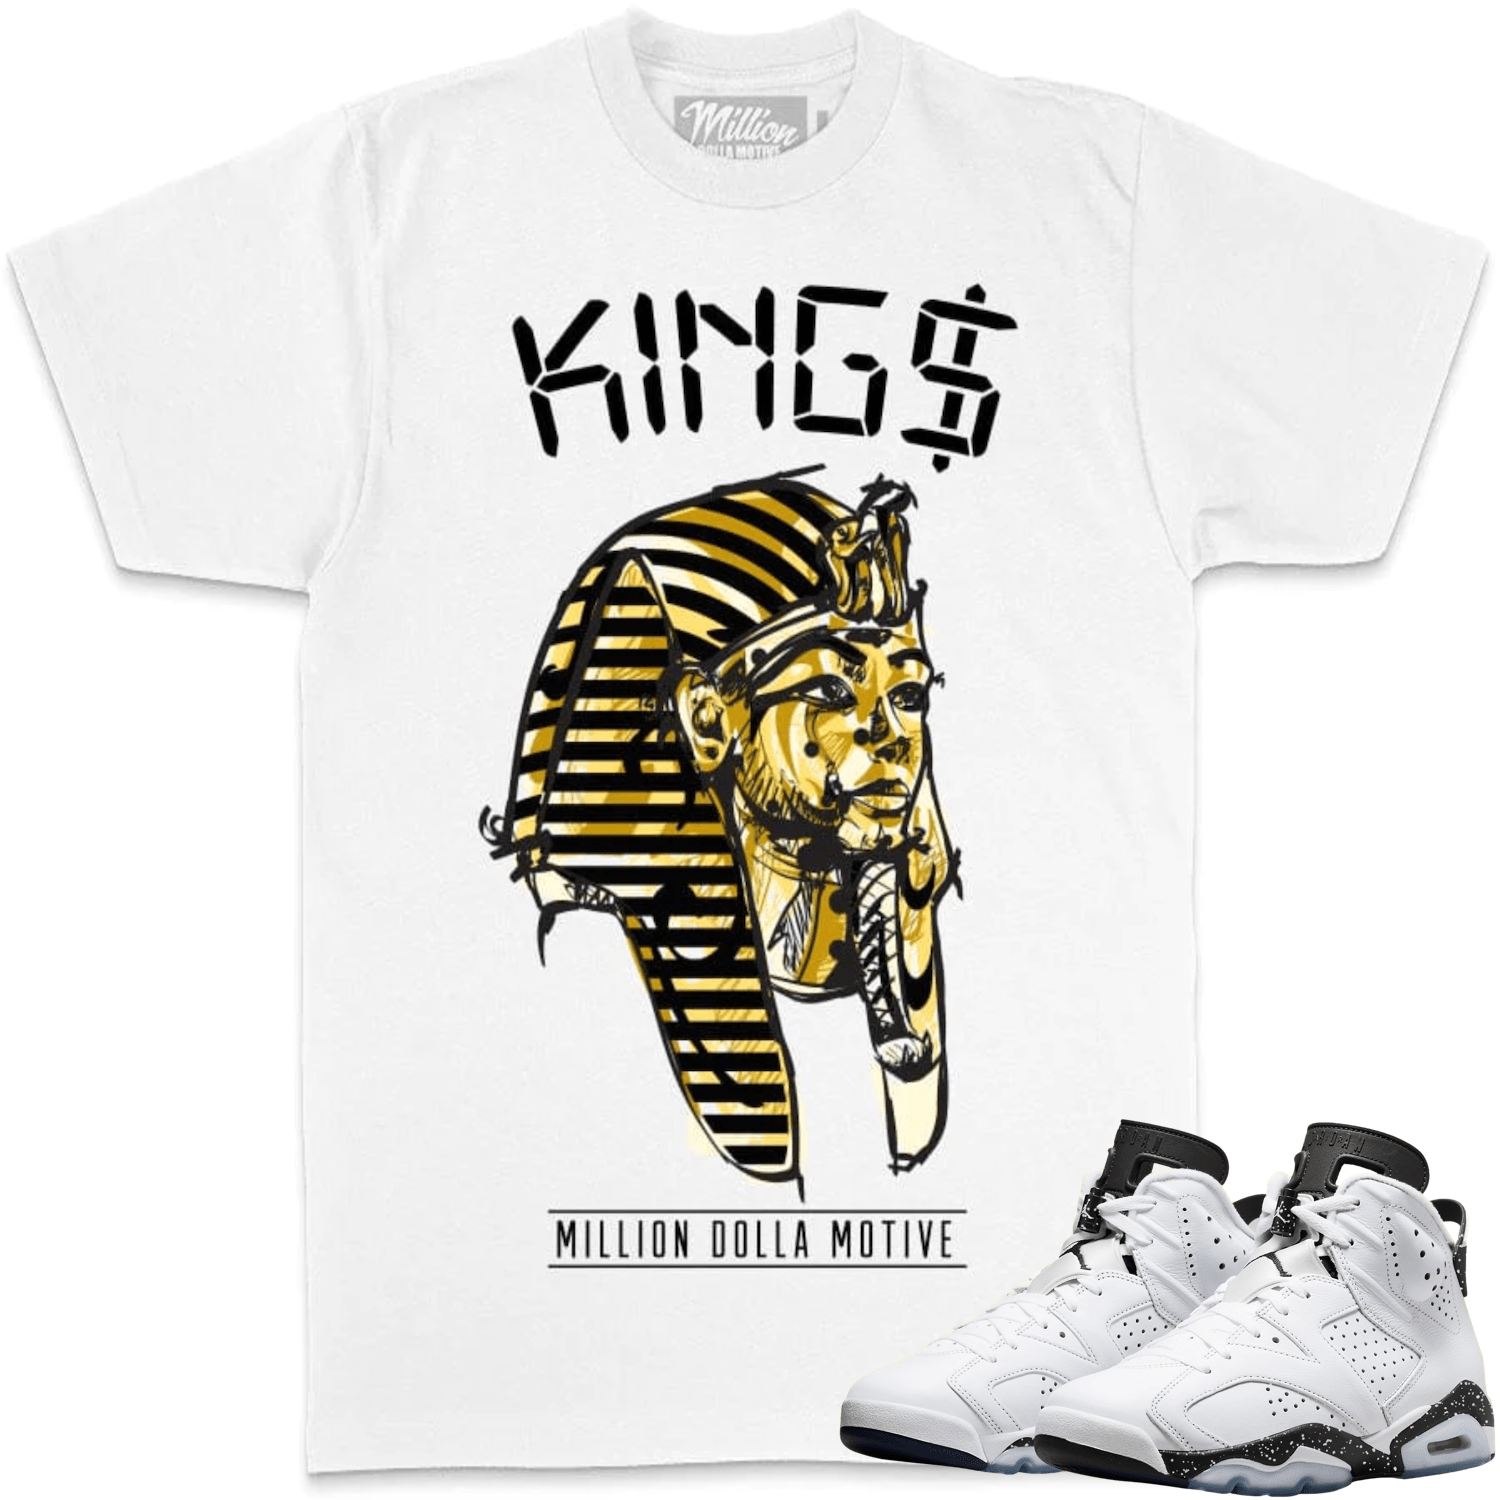 Reverse Oreo 6s Shirt - Jordan 6 Reverse Oreo Sneaker Tees - Kings